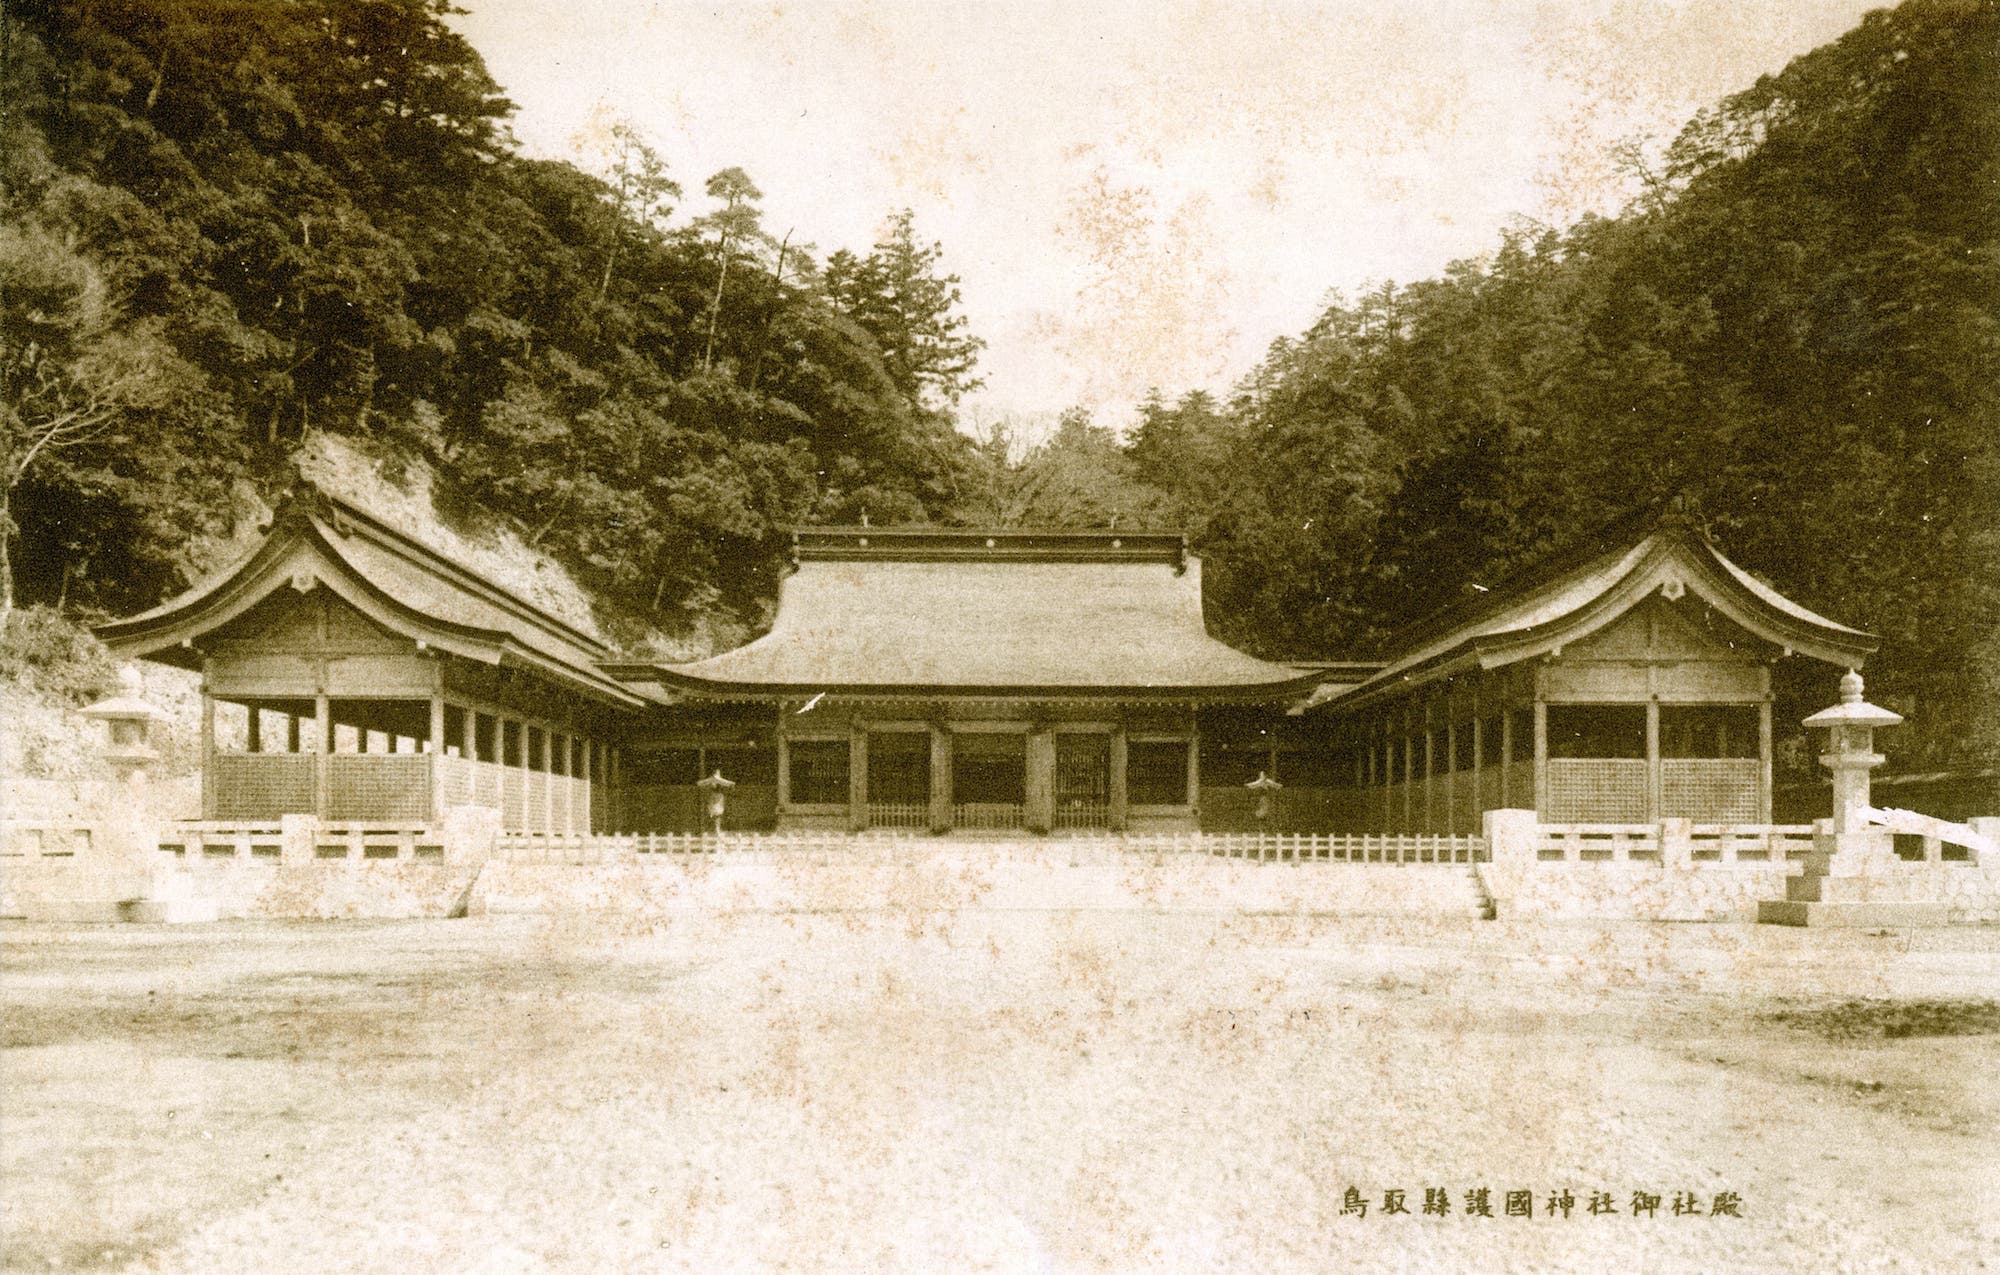 鳥取県護国神社御社殿's image 1